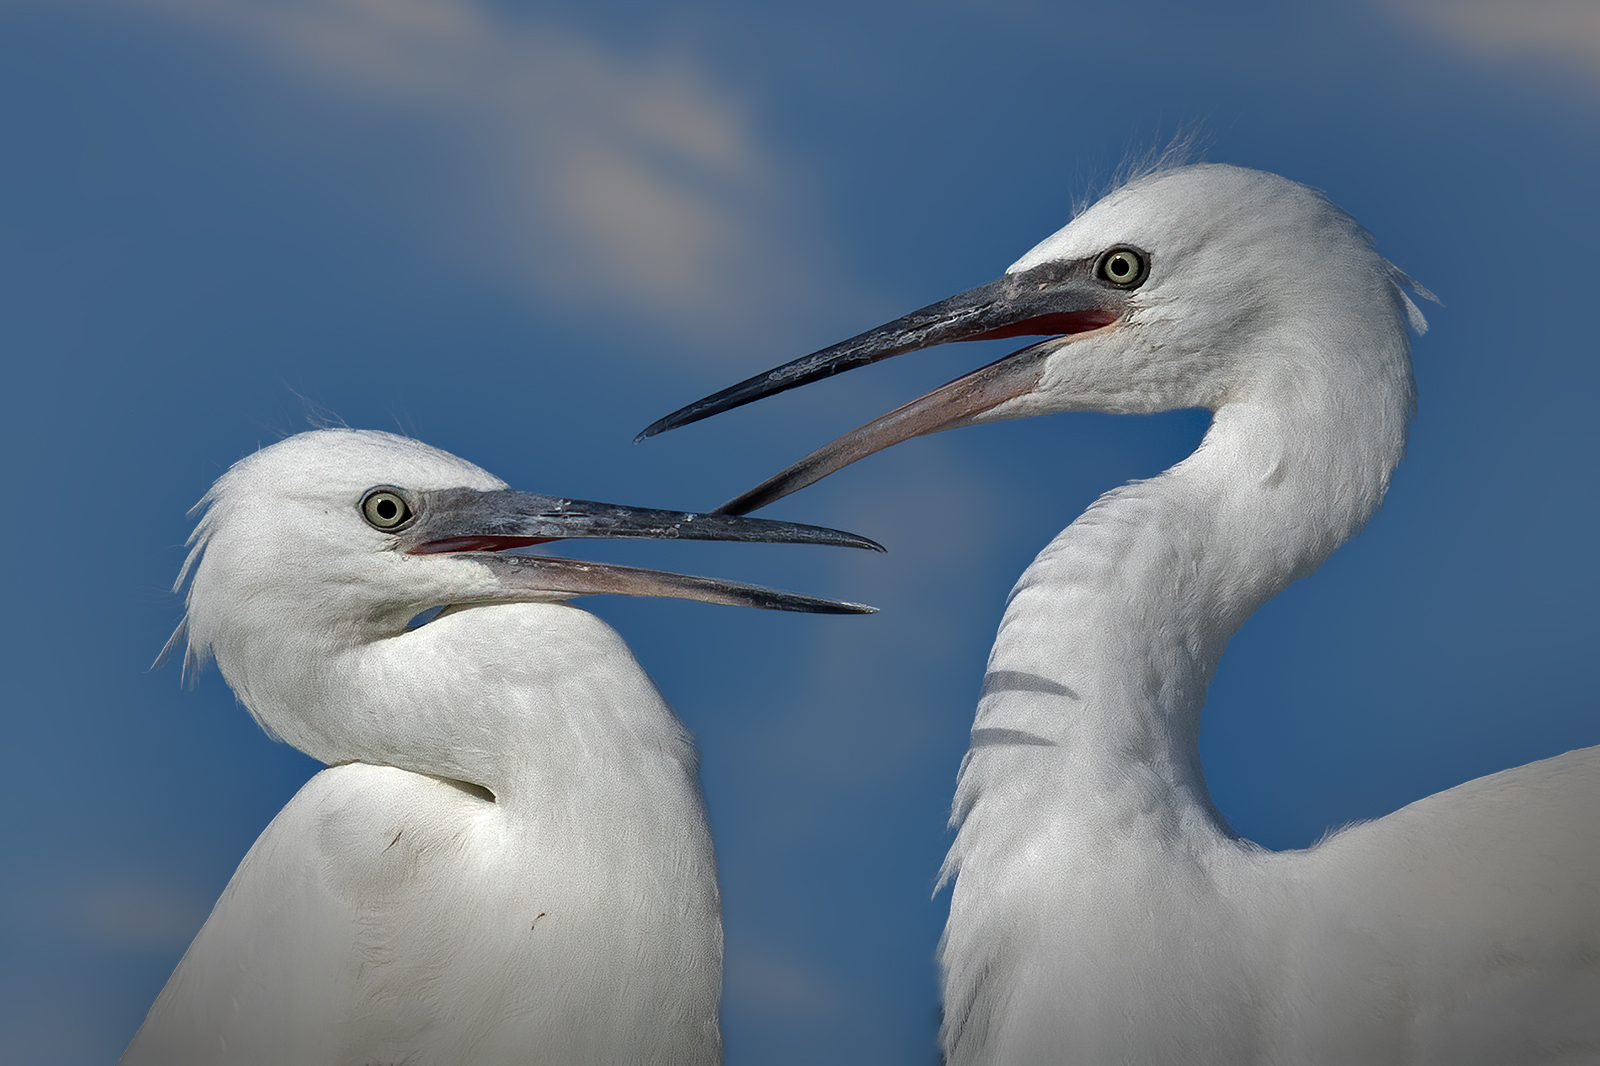 Squabble between young Egrets...